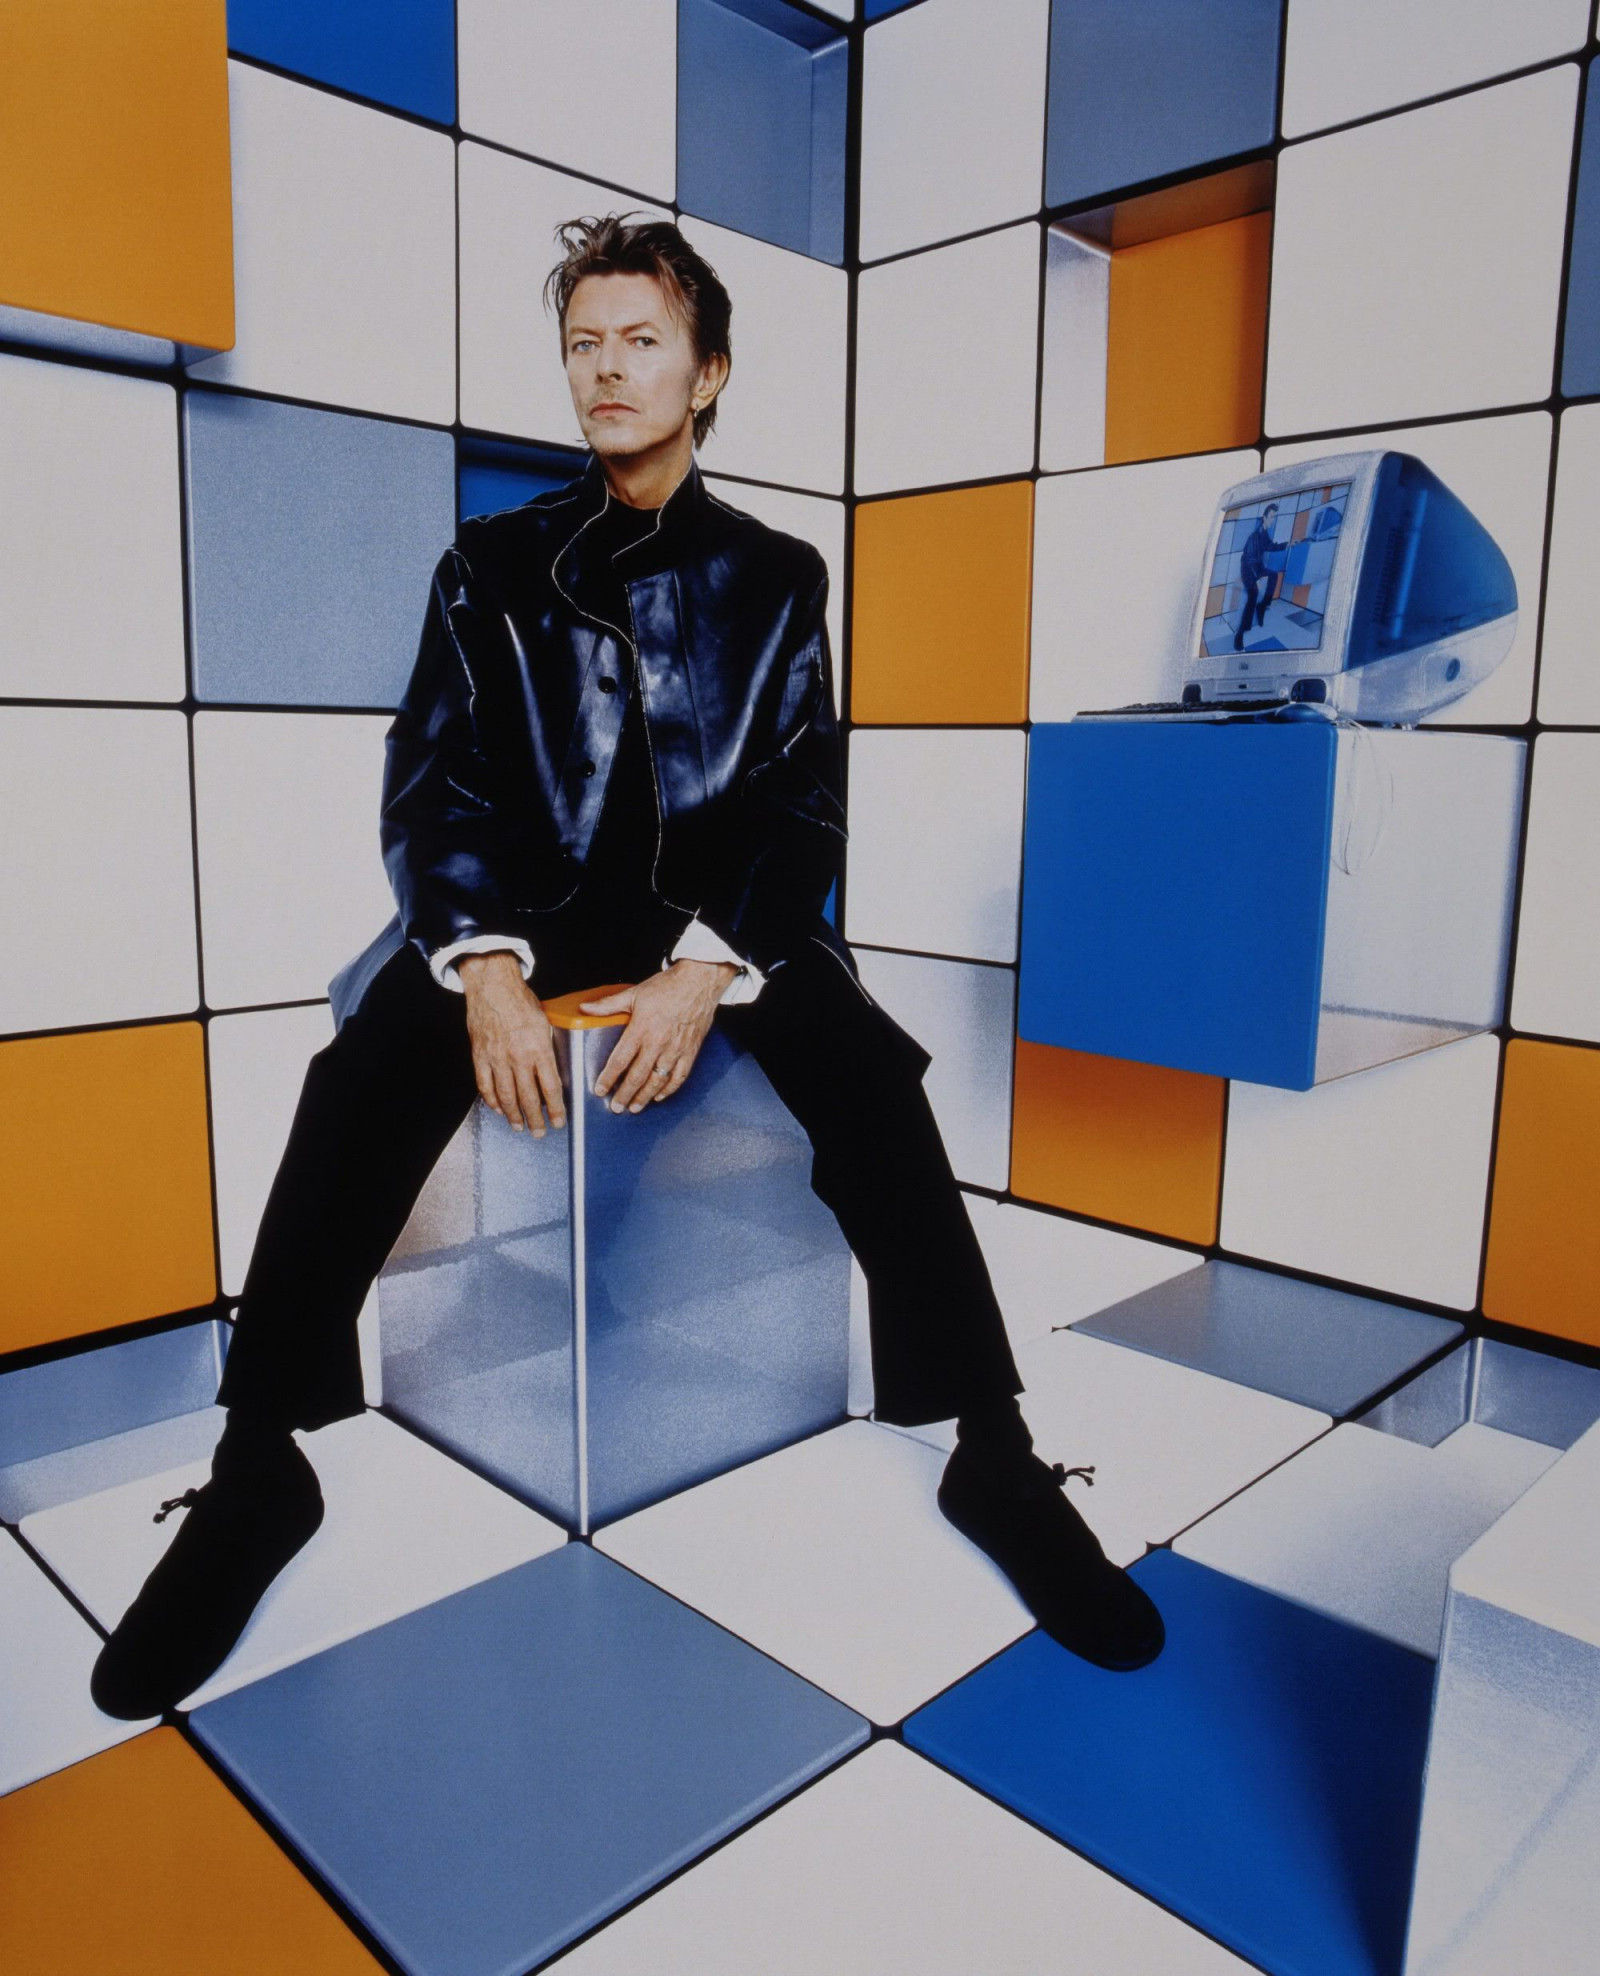 Дэвид Боуи (David Bowie)